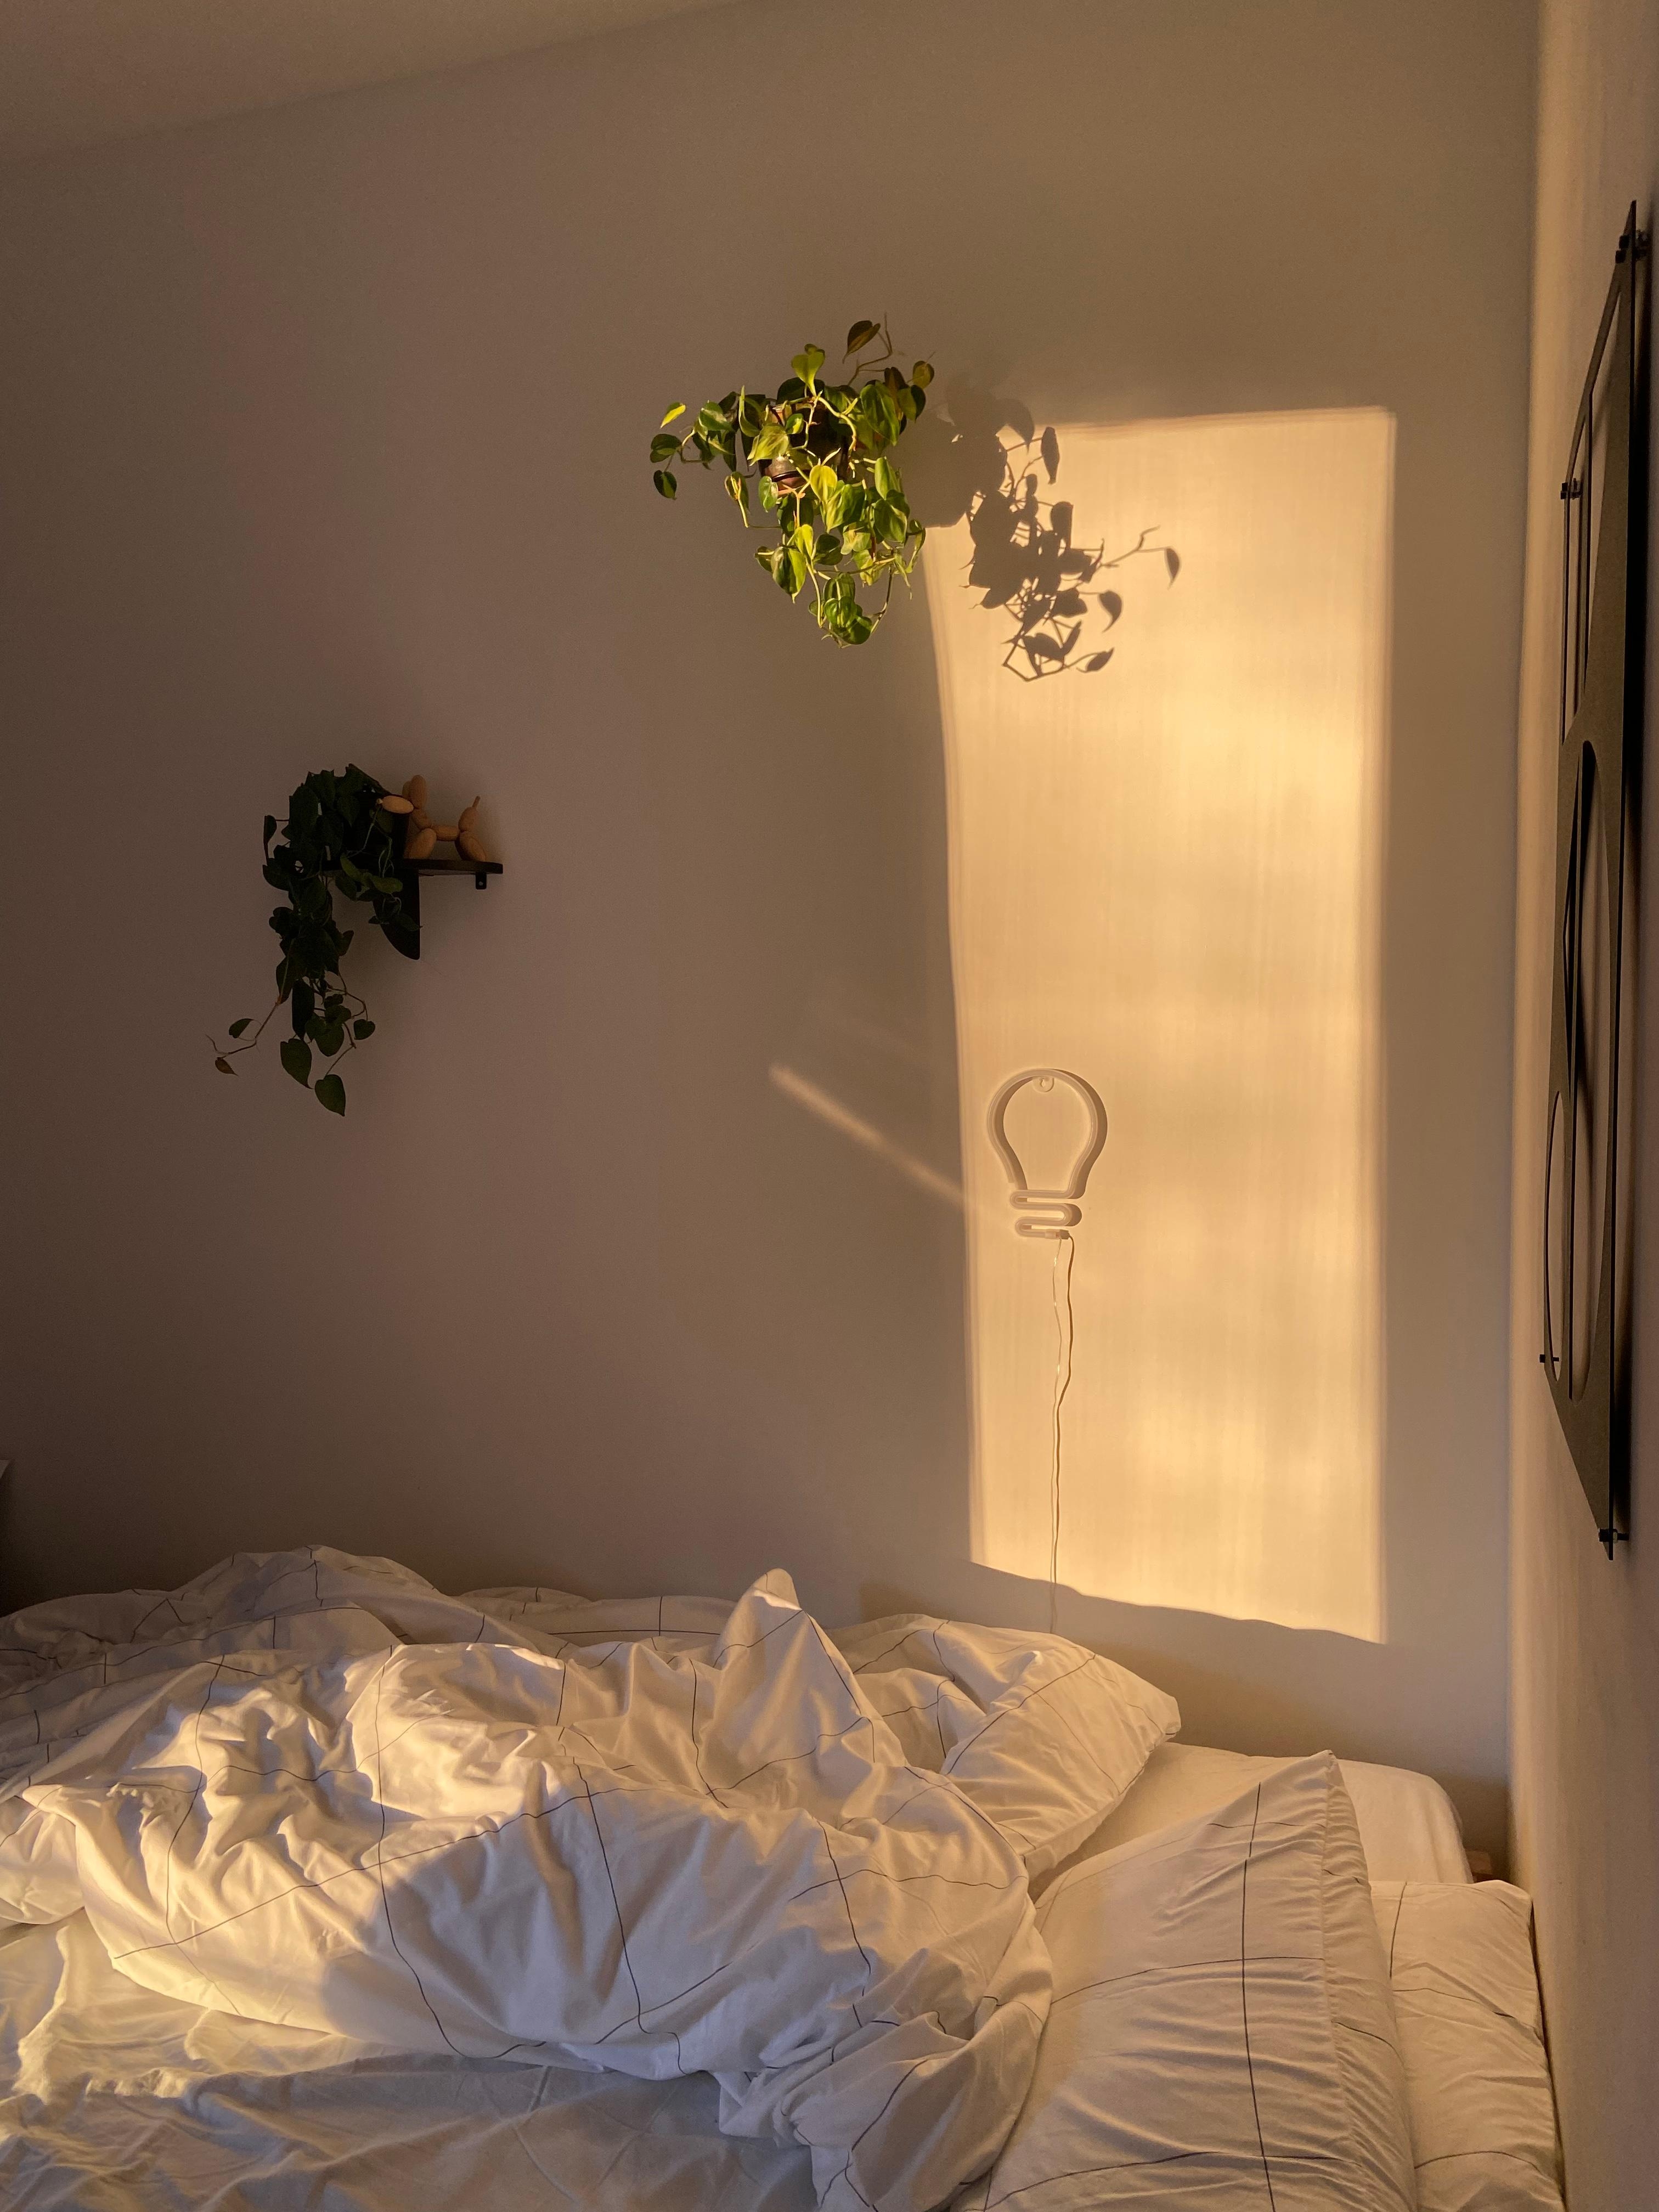 #Morgenlicht ✨ 
#schlafzimmer  #schlafenszeit